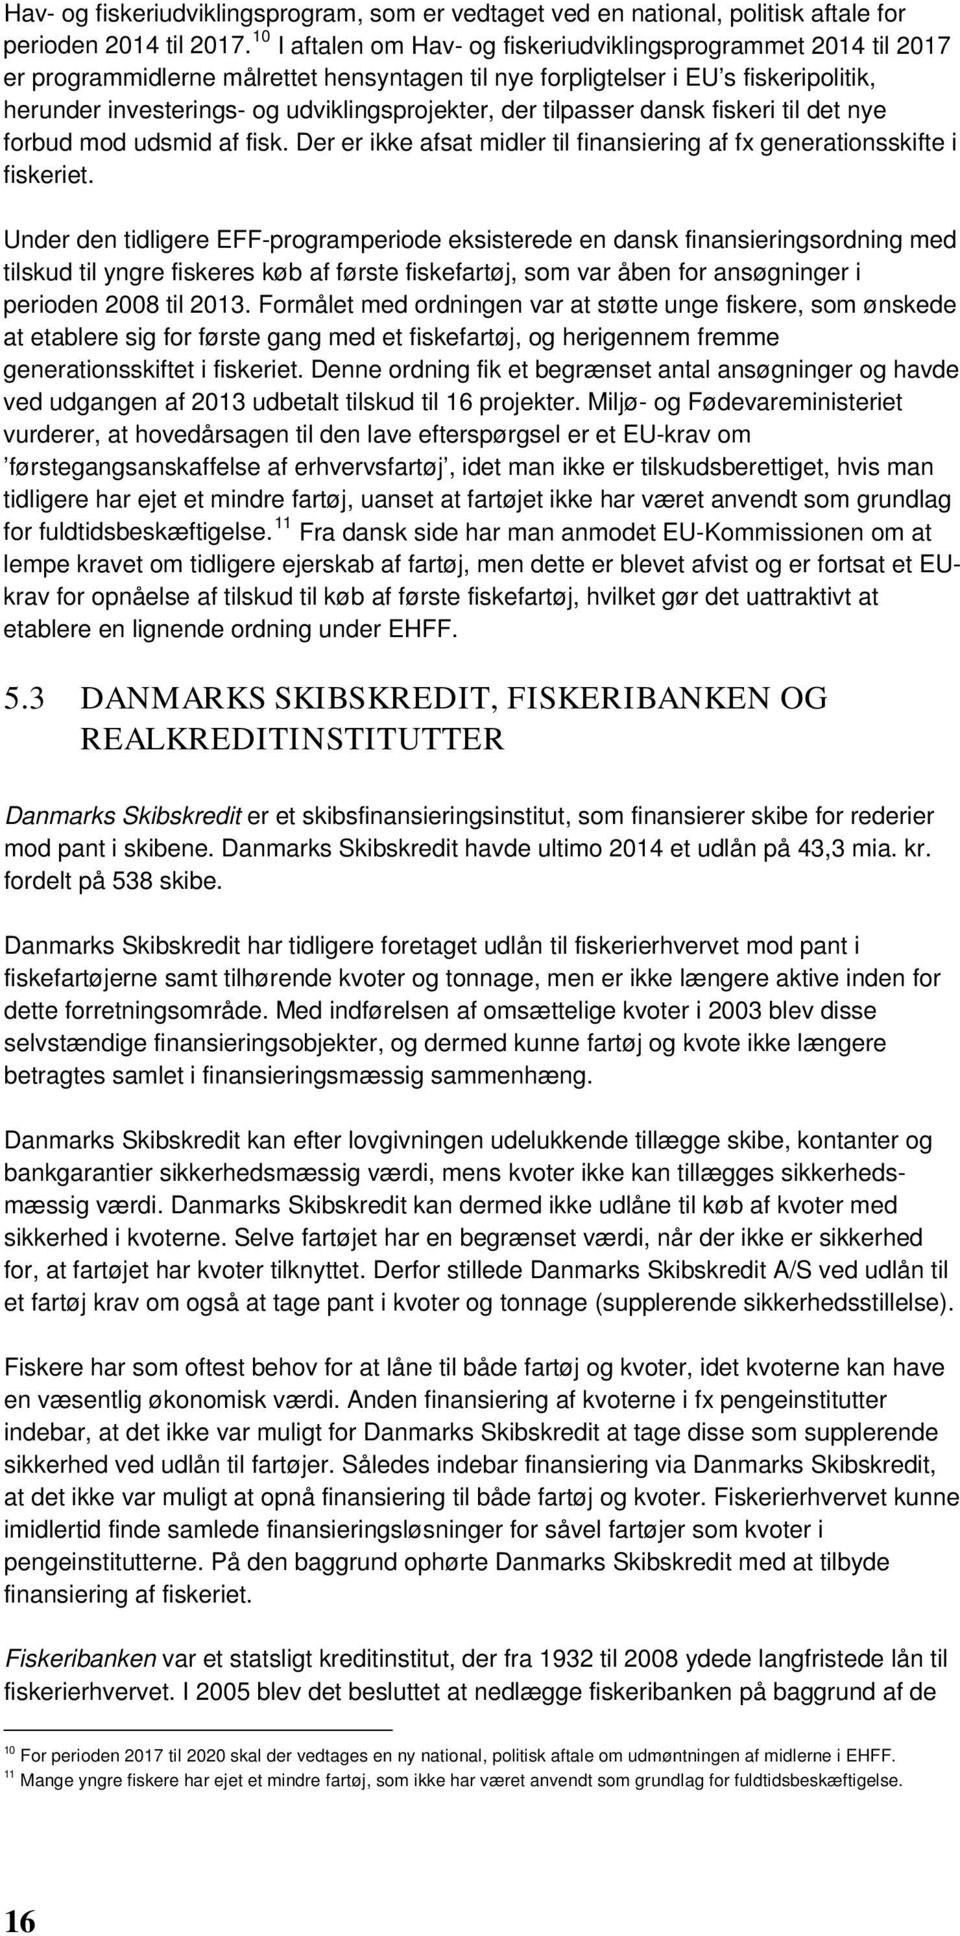 tilpasser dansk fiskeri til det nye forbud mod udsmid af fisk. Der er ikke afsat midler til finansiering af fx generationsskifte i fiskeriet.